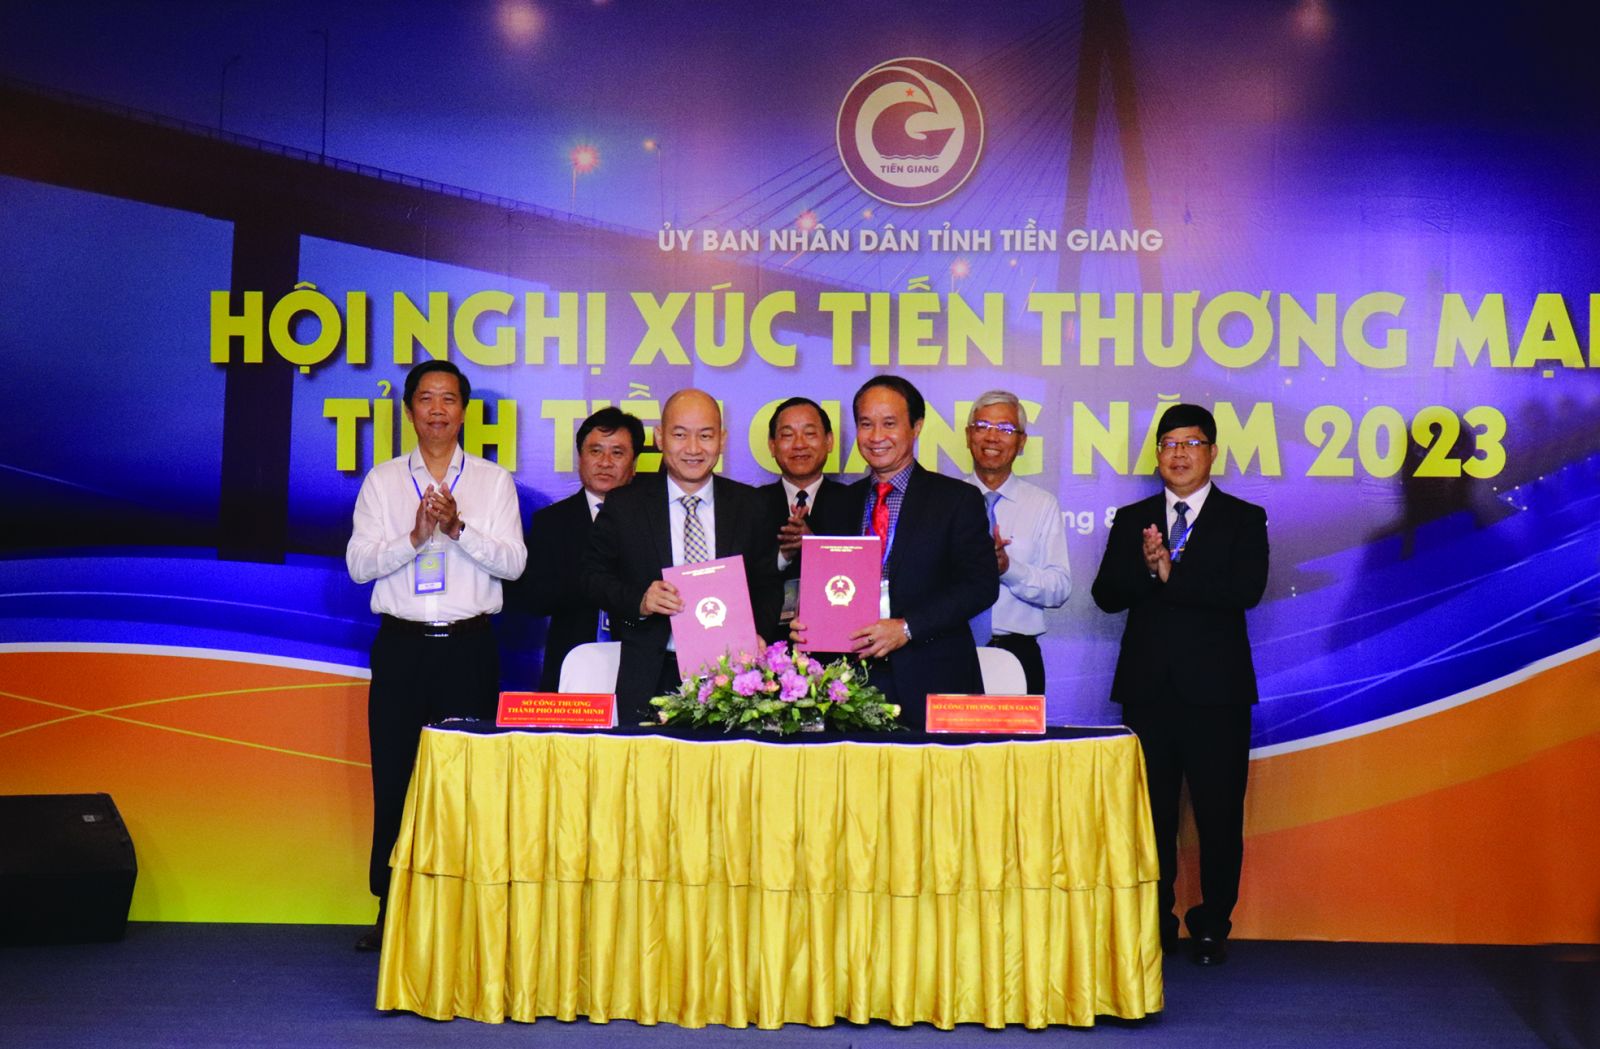  Hội nghị Xúc tiến thương mại tỉnh Tiền Giang năm 2023 và Tuần lễ giới thiệu các sản phẩm OCOP, sản phẩm đặc trưng của Tiền Giang tại TP. Hồ Chí Minh.